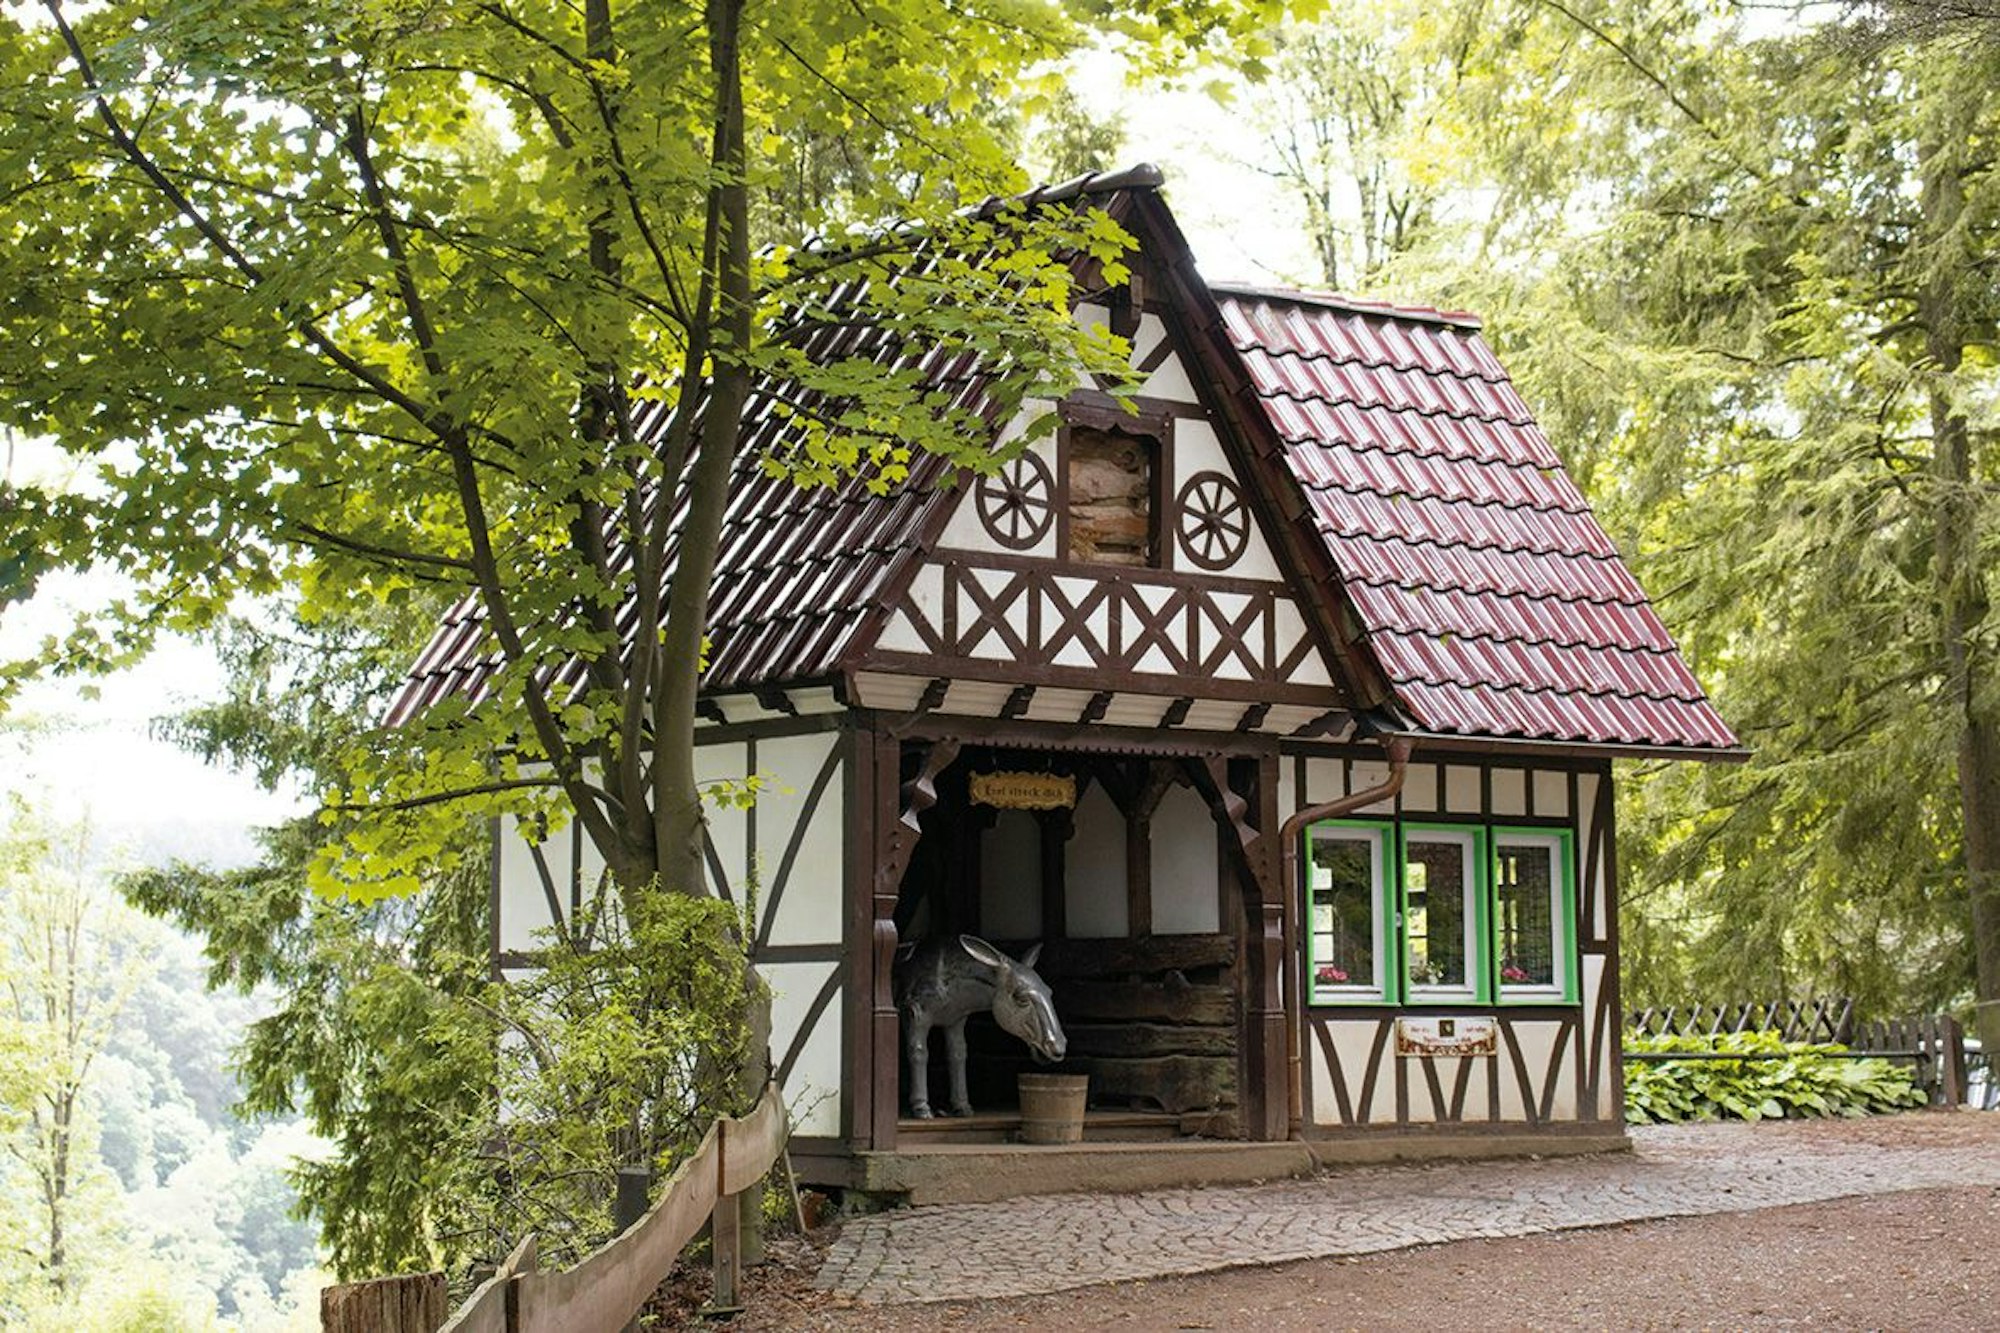 Ein Märchenhaus aus dem Märchenwald in Altenberg in Odenthal.